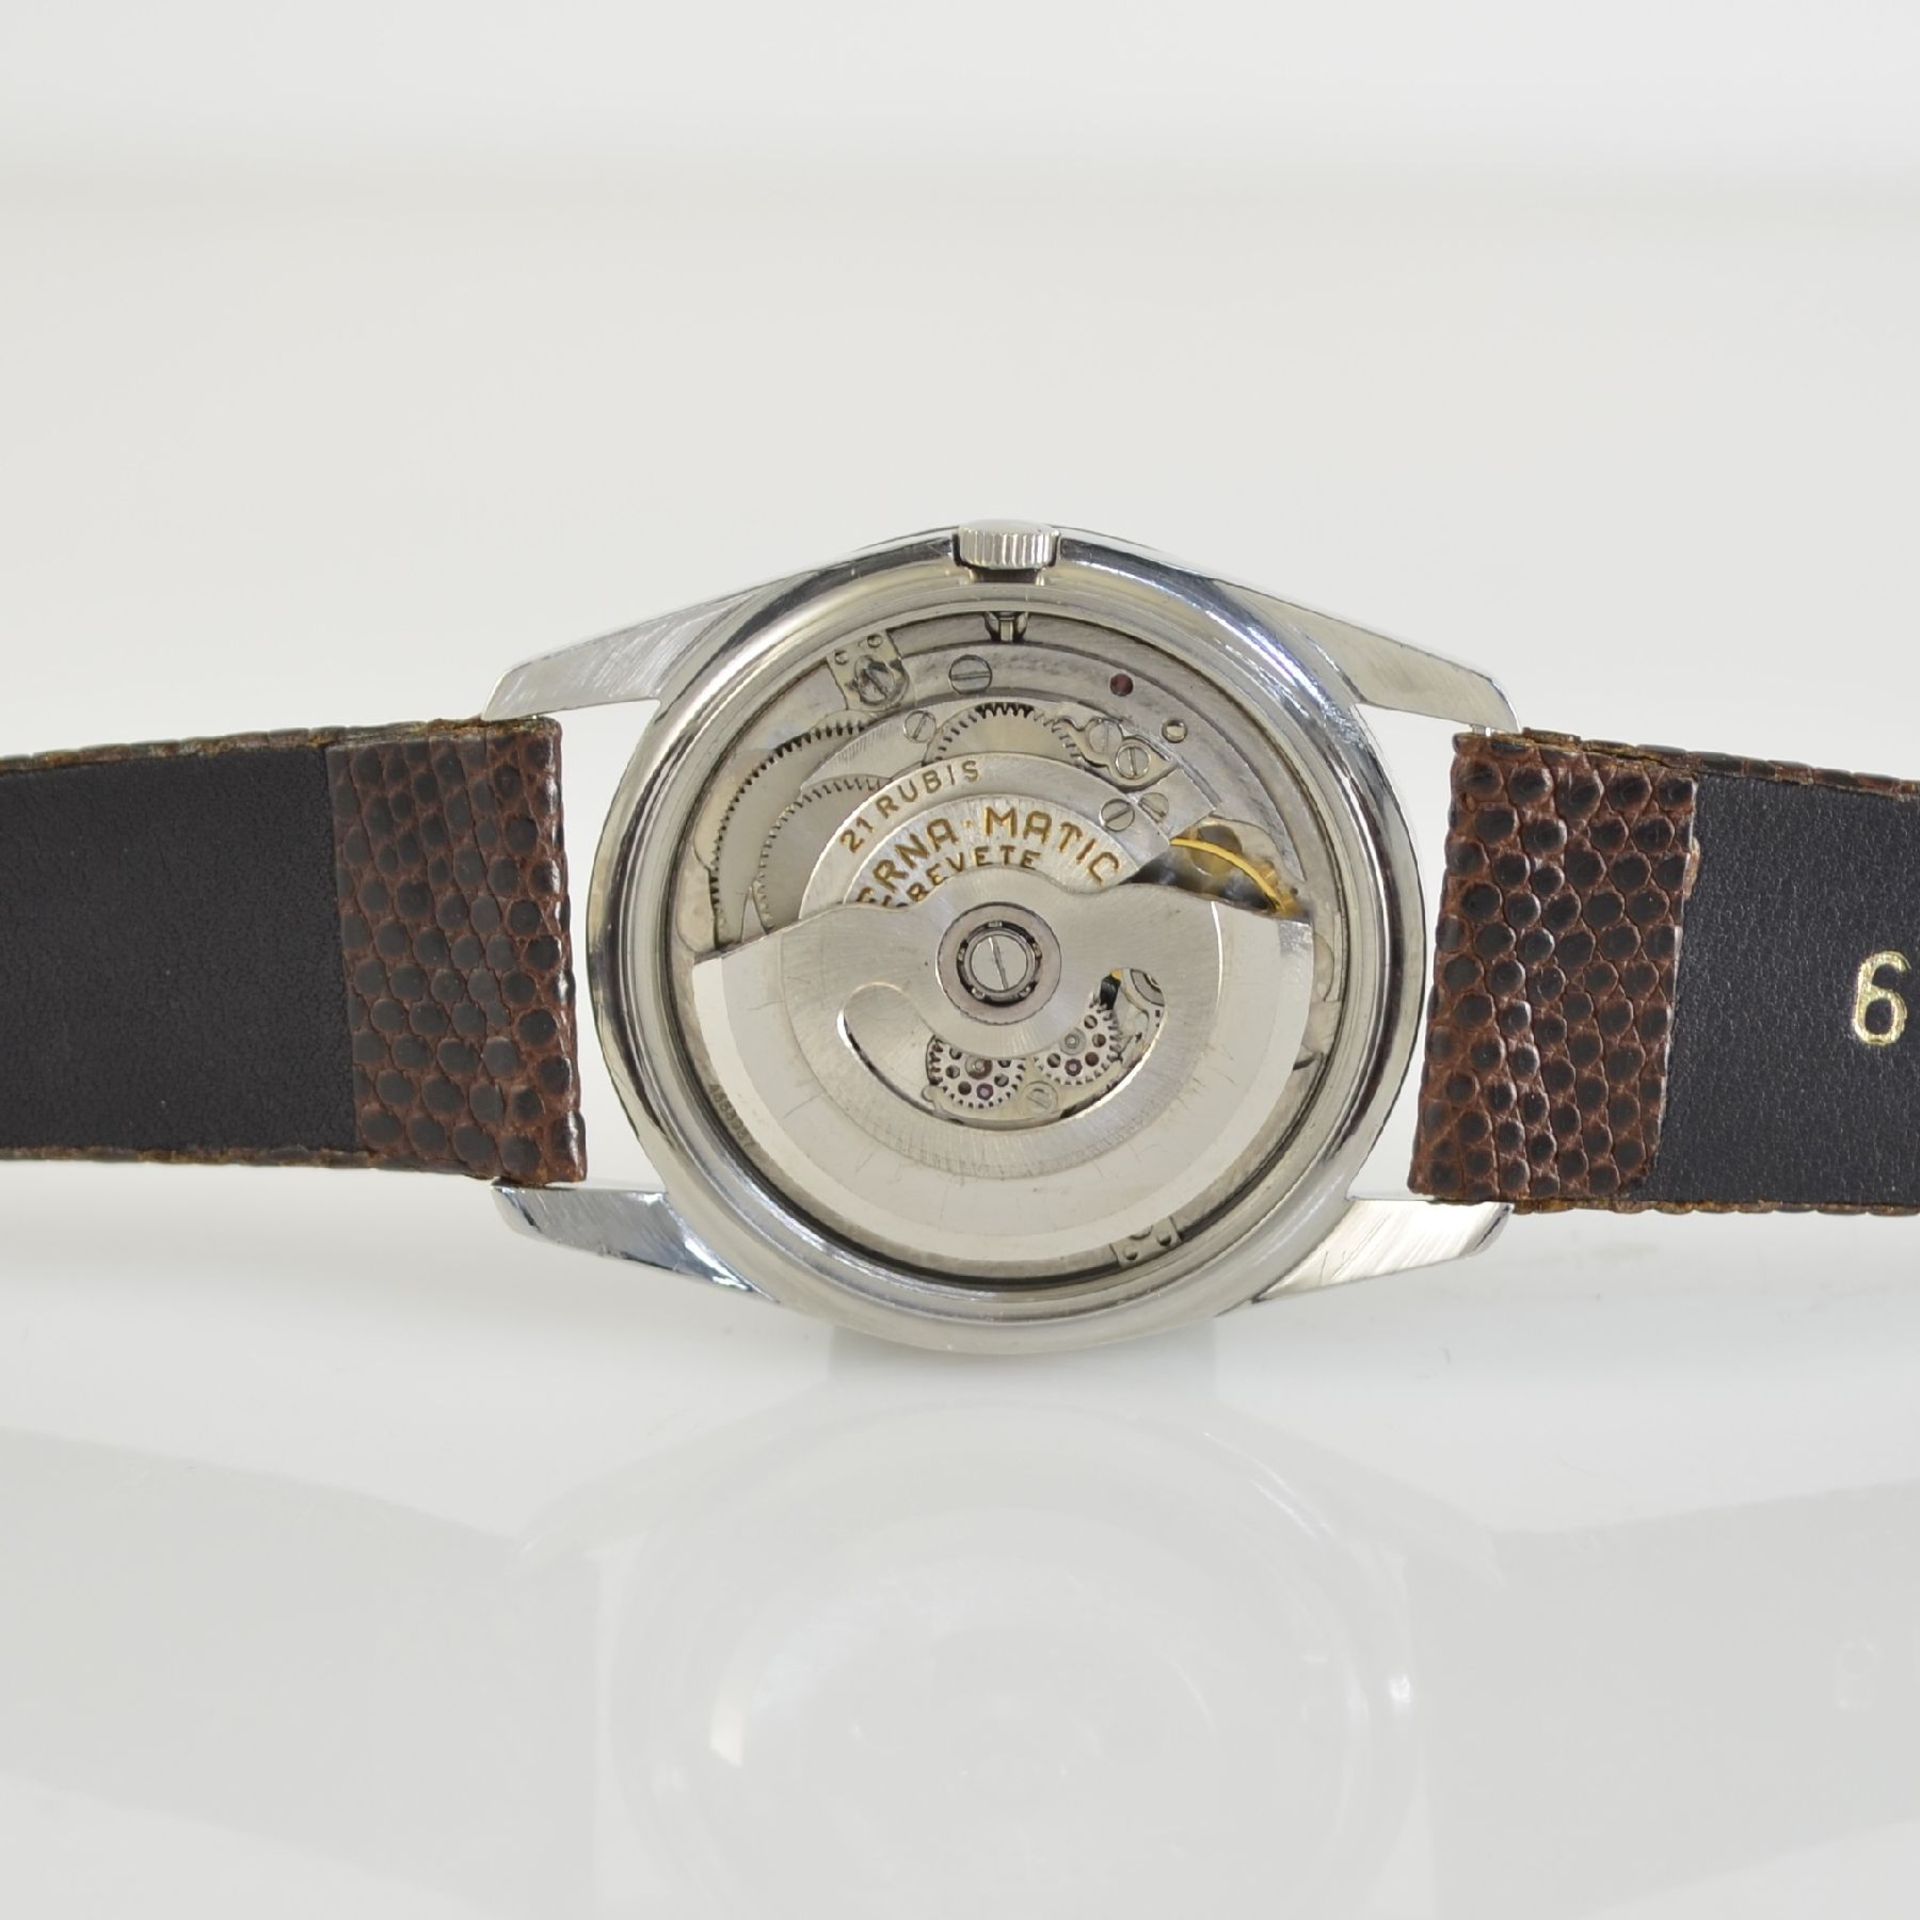 ETERNA-MATIC 2 chronometer in steel, Switzerland around 1960, case backs screwed down, silvered - Bild 5 aus 12